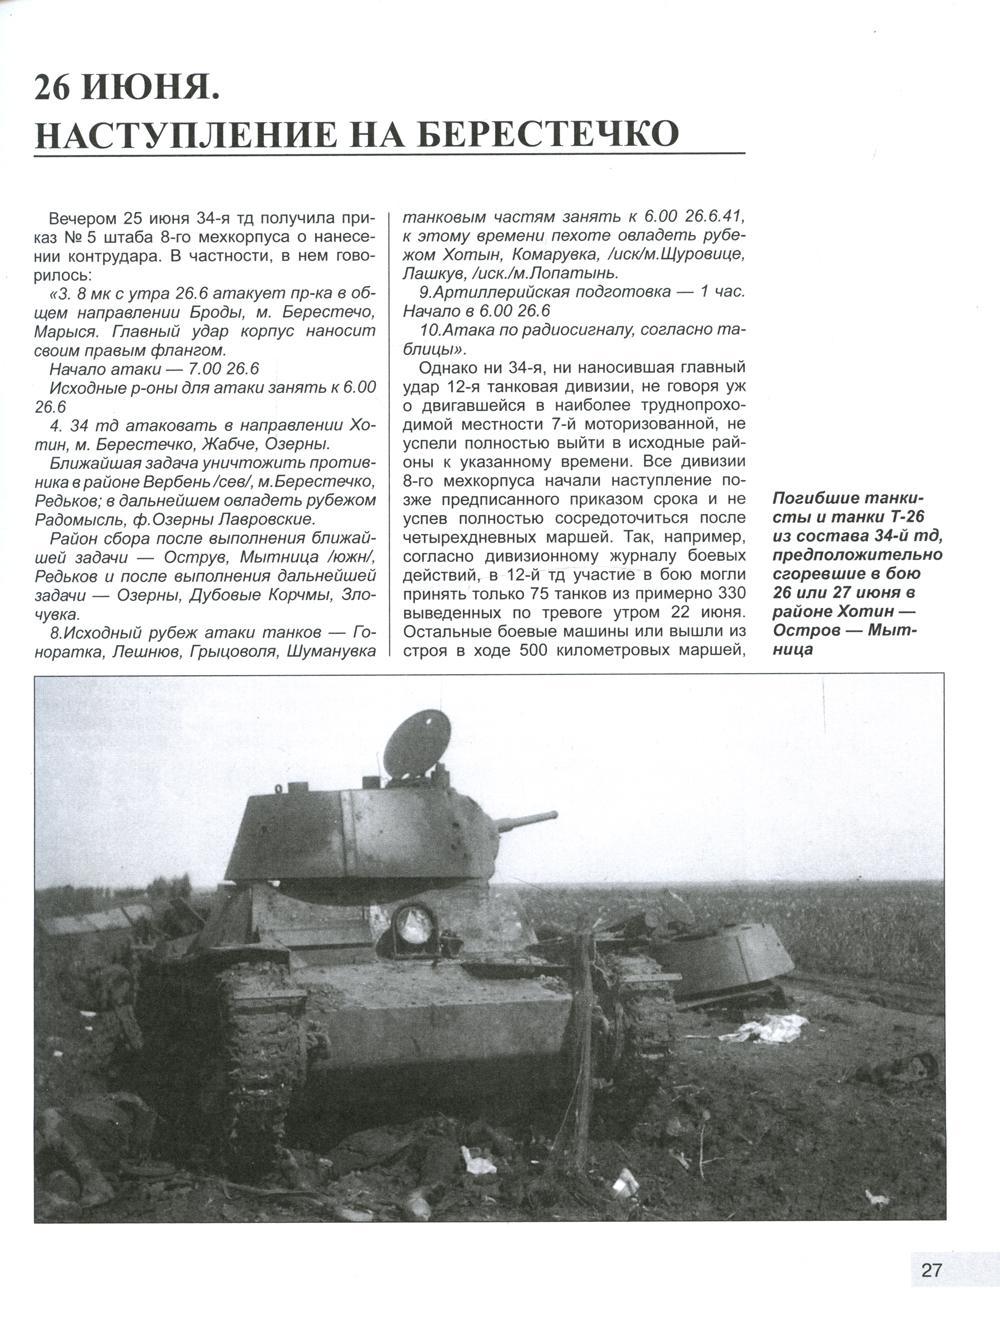 Танковая битва под Дубно. Последний бой «сухопутных линкоров» Т-35